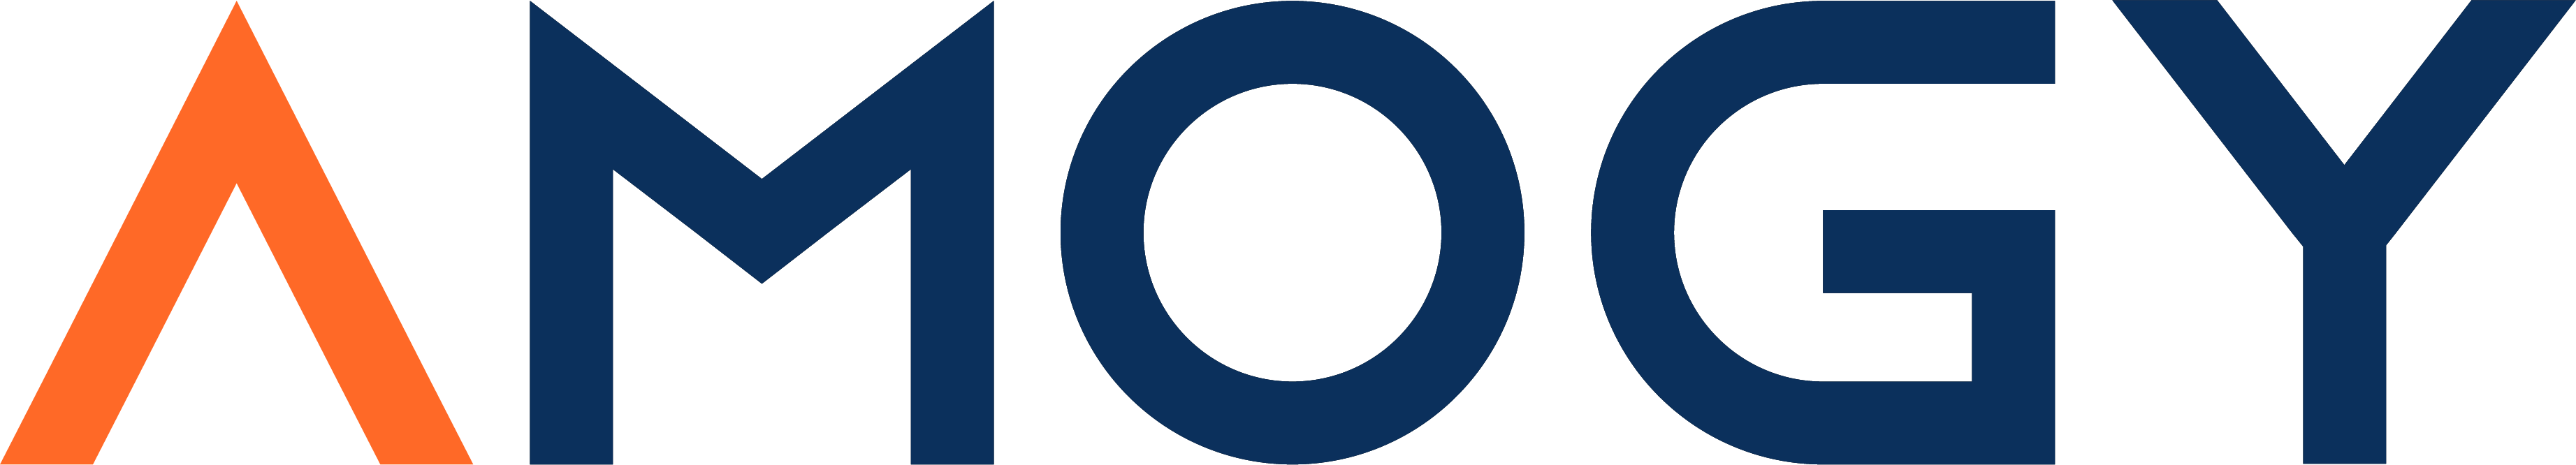 orter_logos/amogy company logo